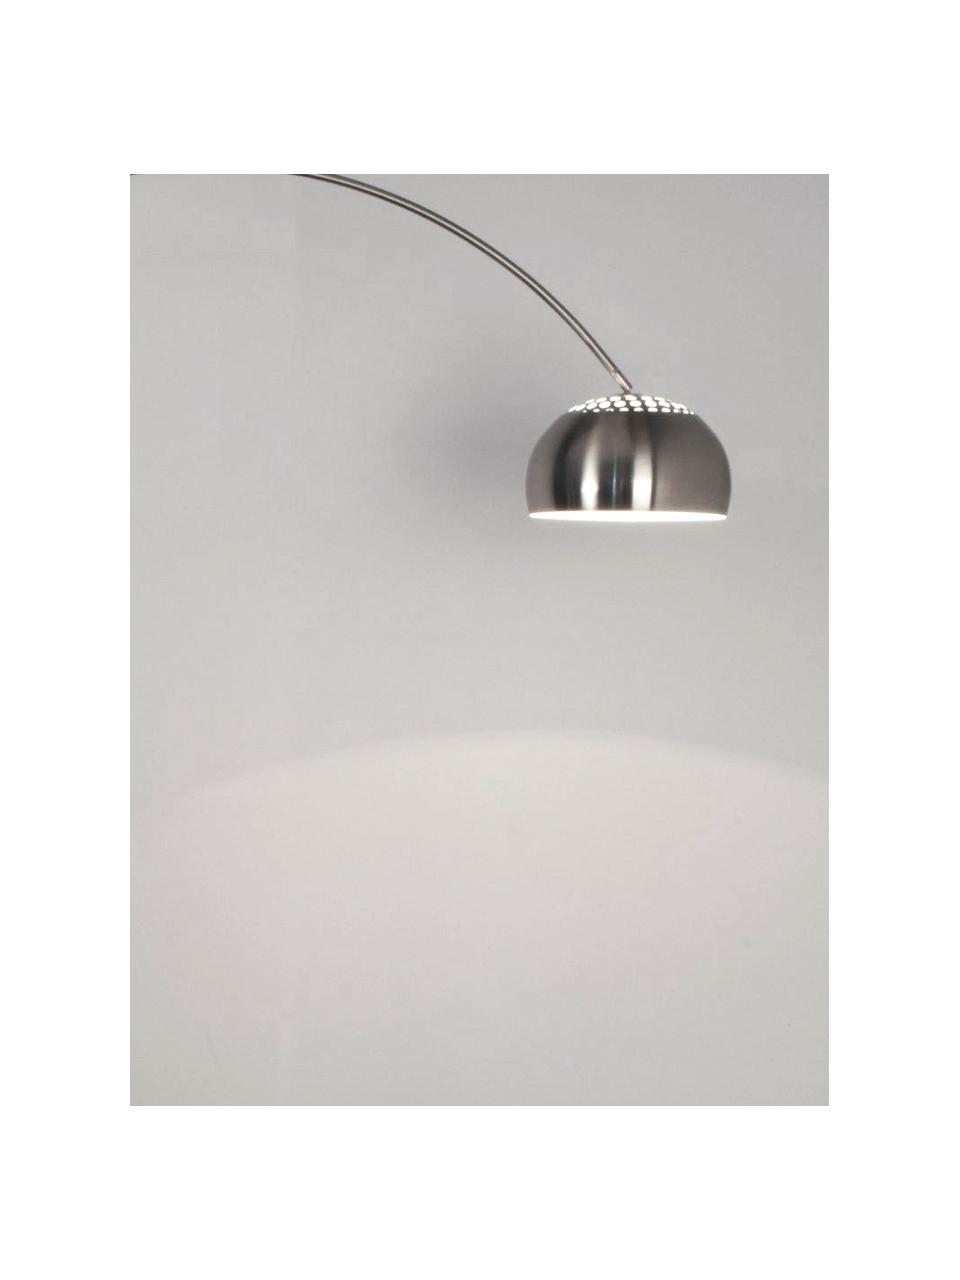 Grote booglamp Metal Bow in zilverkleur, Lampenkap: geborsteld metaal, Frame: geborsteld metaal, Lampvoet: steen met verzilverd meta, Metaal, 170 x 205 cm